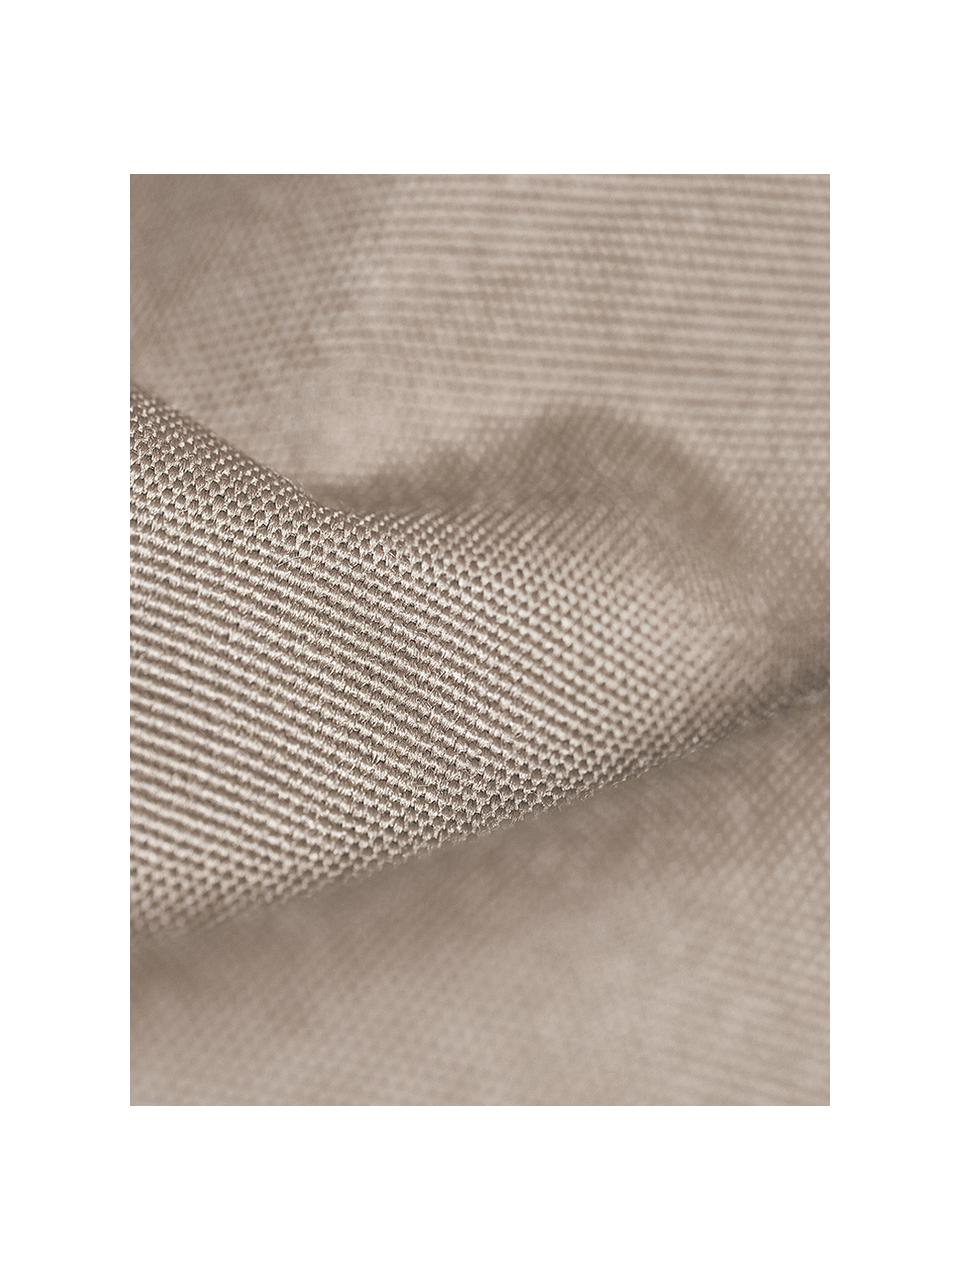 Worek do siedzenia Meadow, Tapicerka: poliester powlekany poliu, Greige, S 130 x W 160 cm